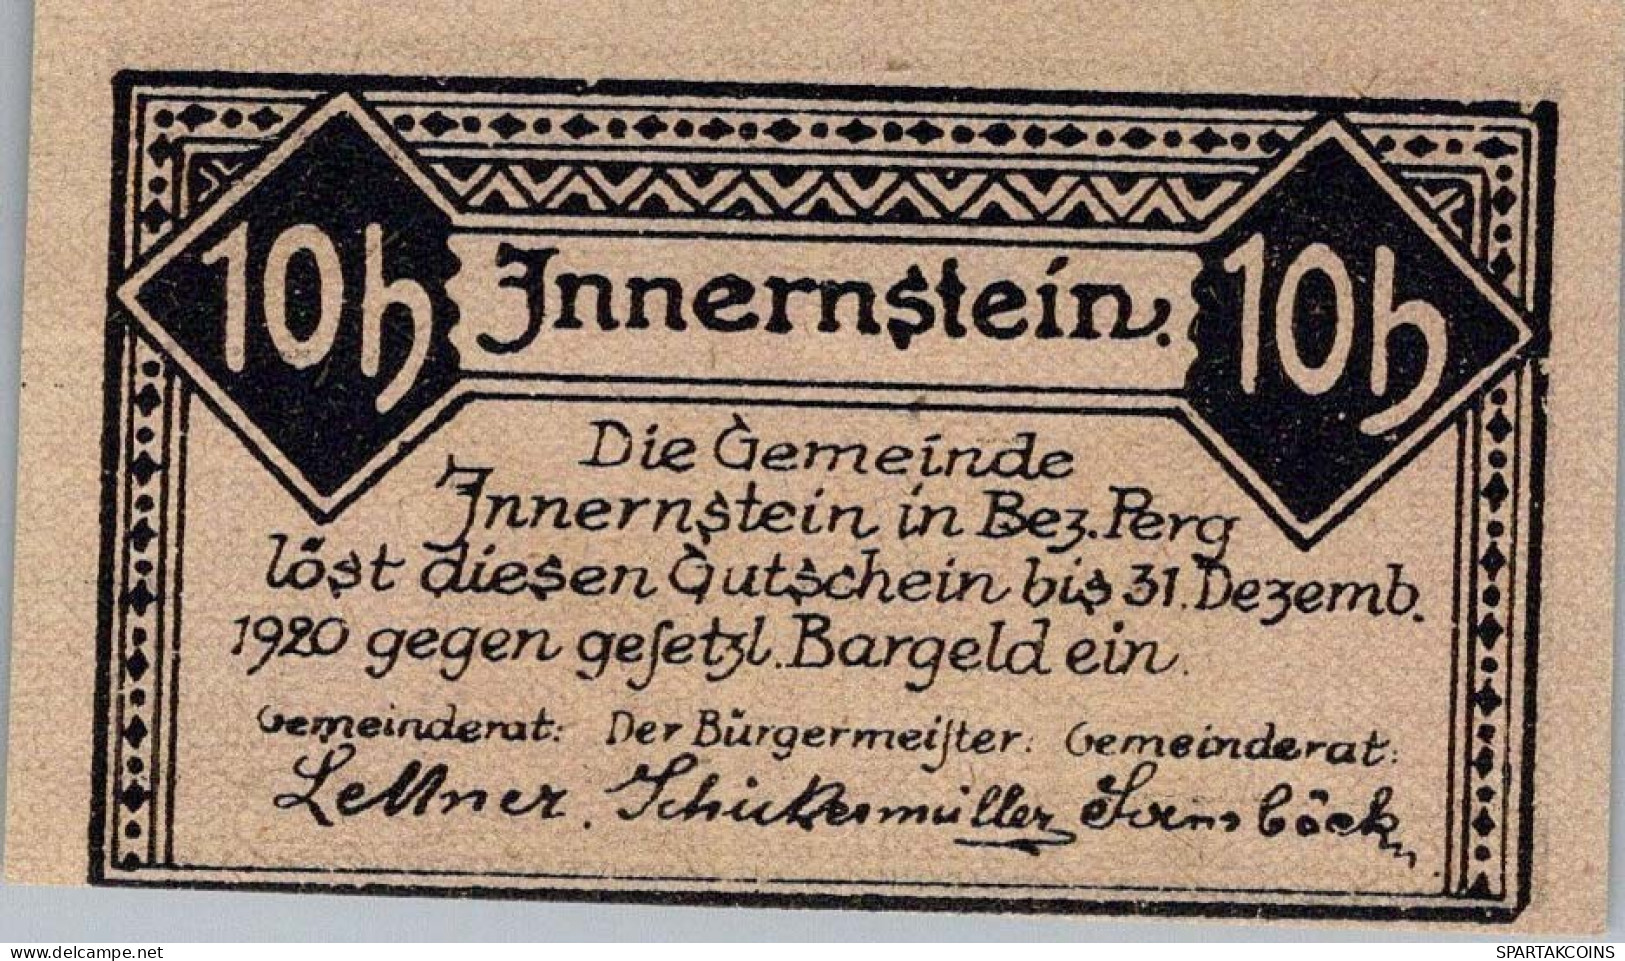 10 HELLER 1920 Stadt INNERNSTEIN Oberösterreich Österreich Notgeld Papiergeld Banknote #PG890 - [11] Local Banknote Issues